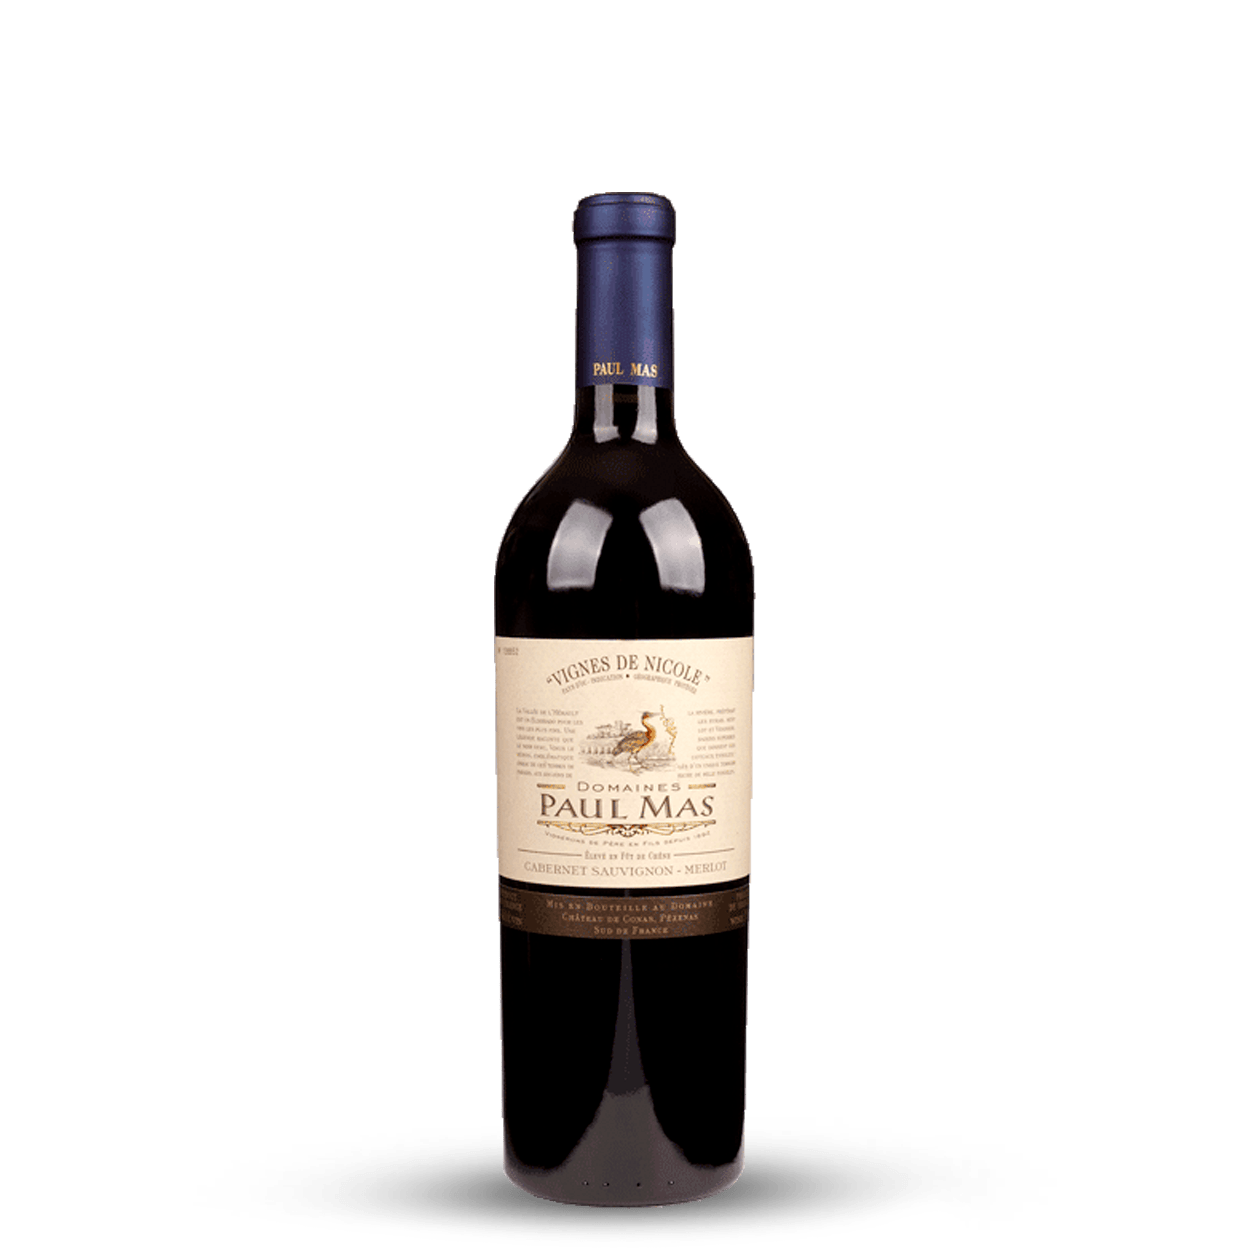 Paul Mas Vignes de Nicole Cabernet sauvignon – Merlot